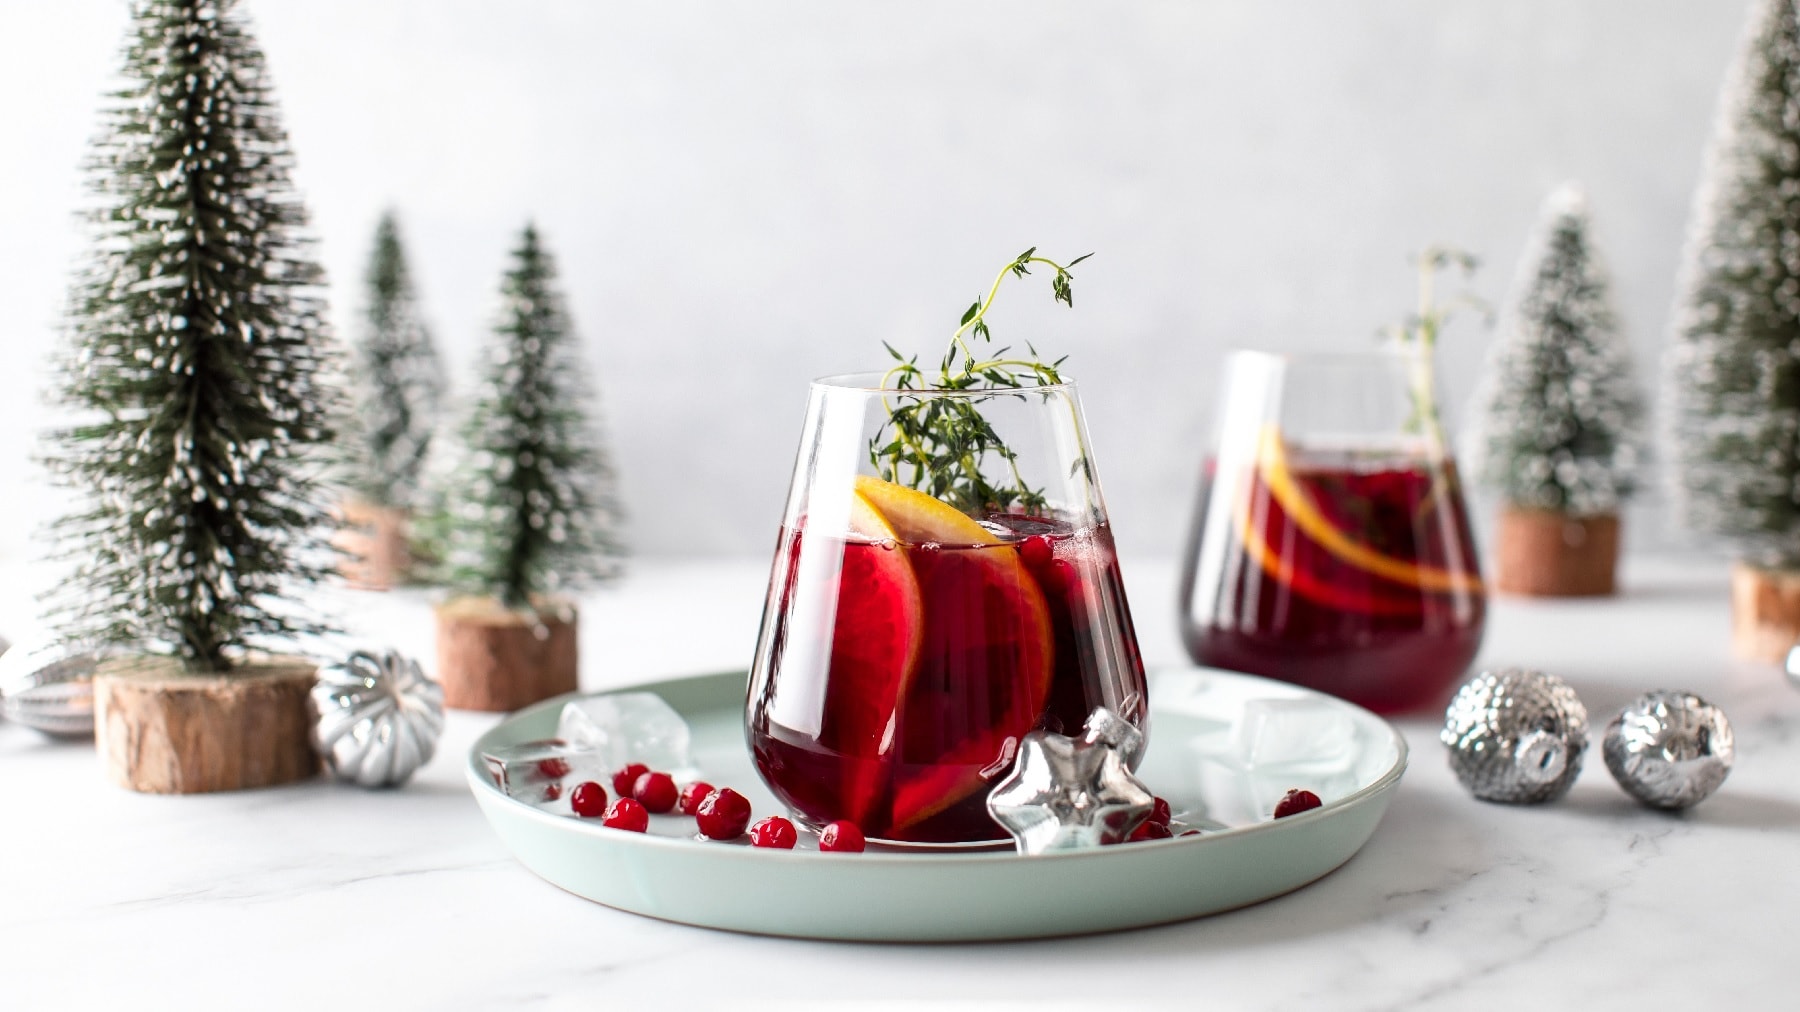 Zwei Gläser vom weihnachtlichen Gin Tonic vor einem weihnachtlichen Hintergrund mit Tannen, silbernen Kugeln und Schnee.